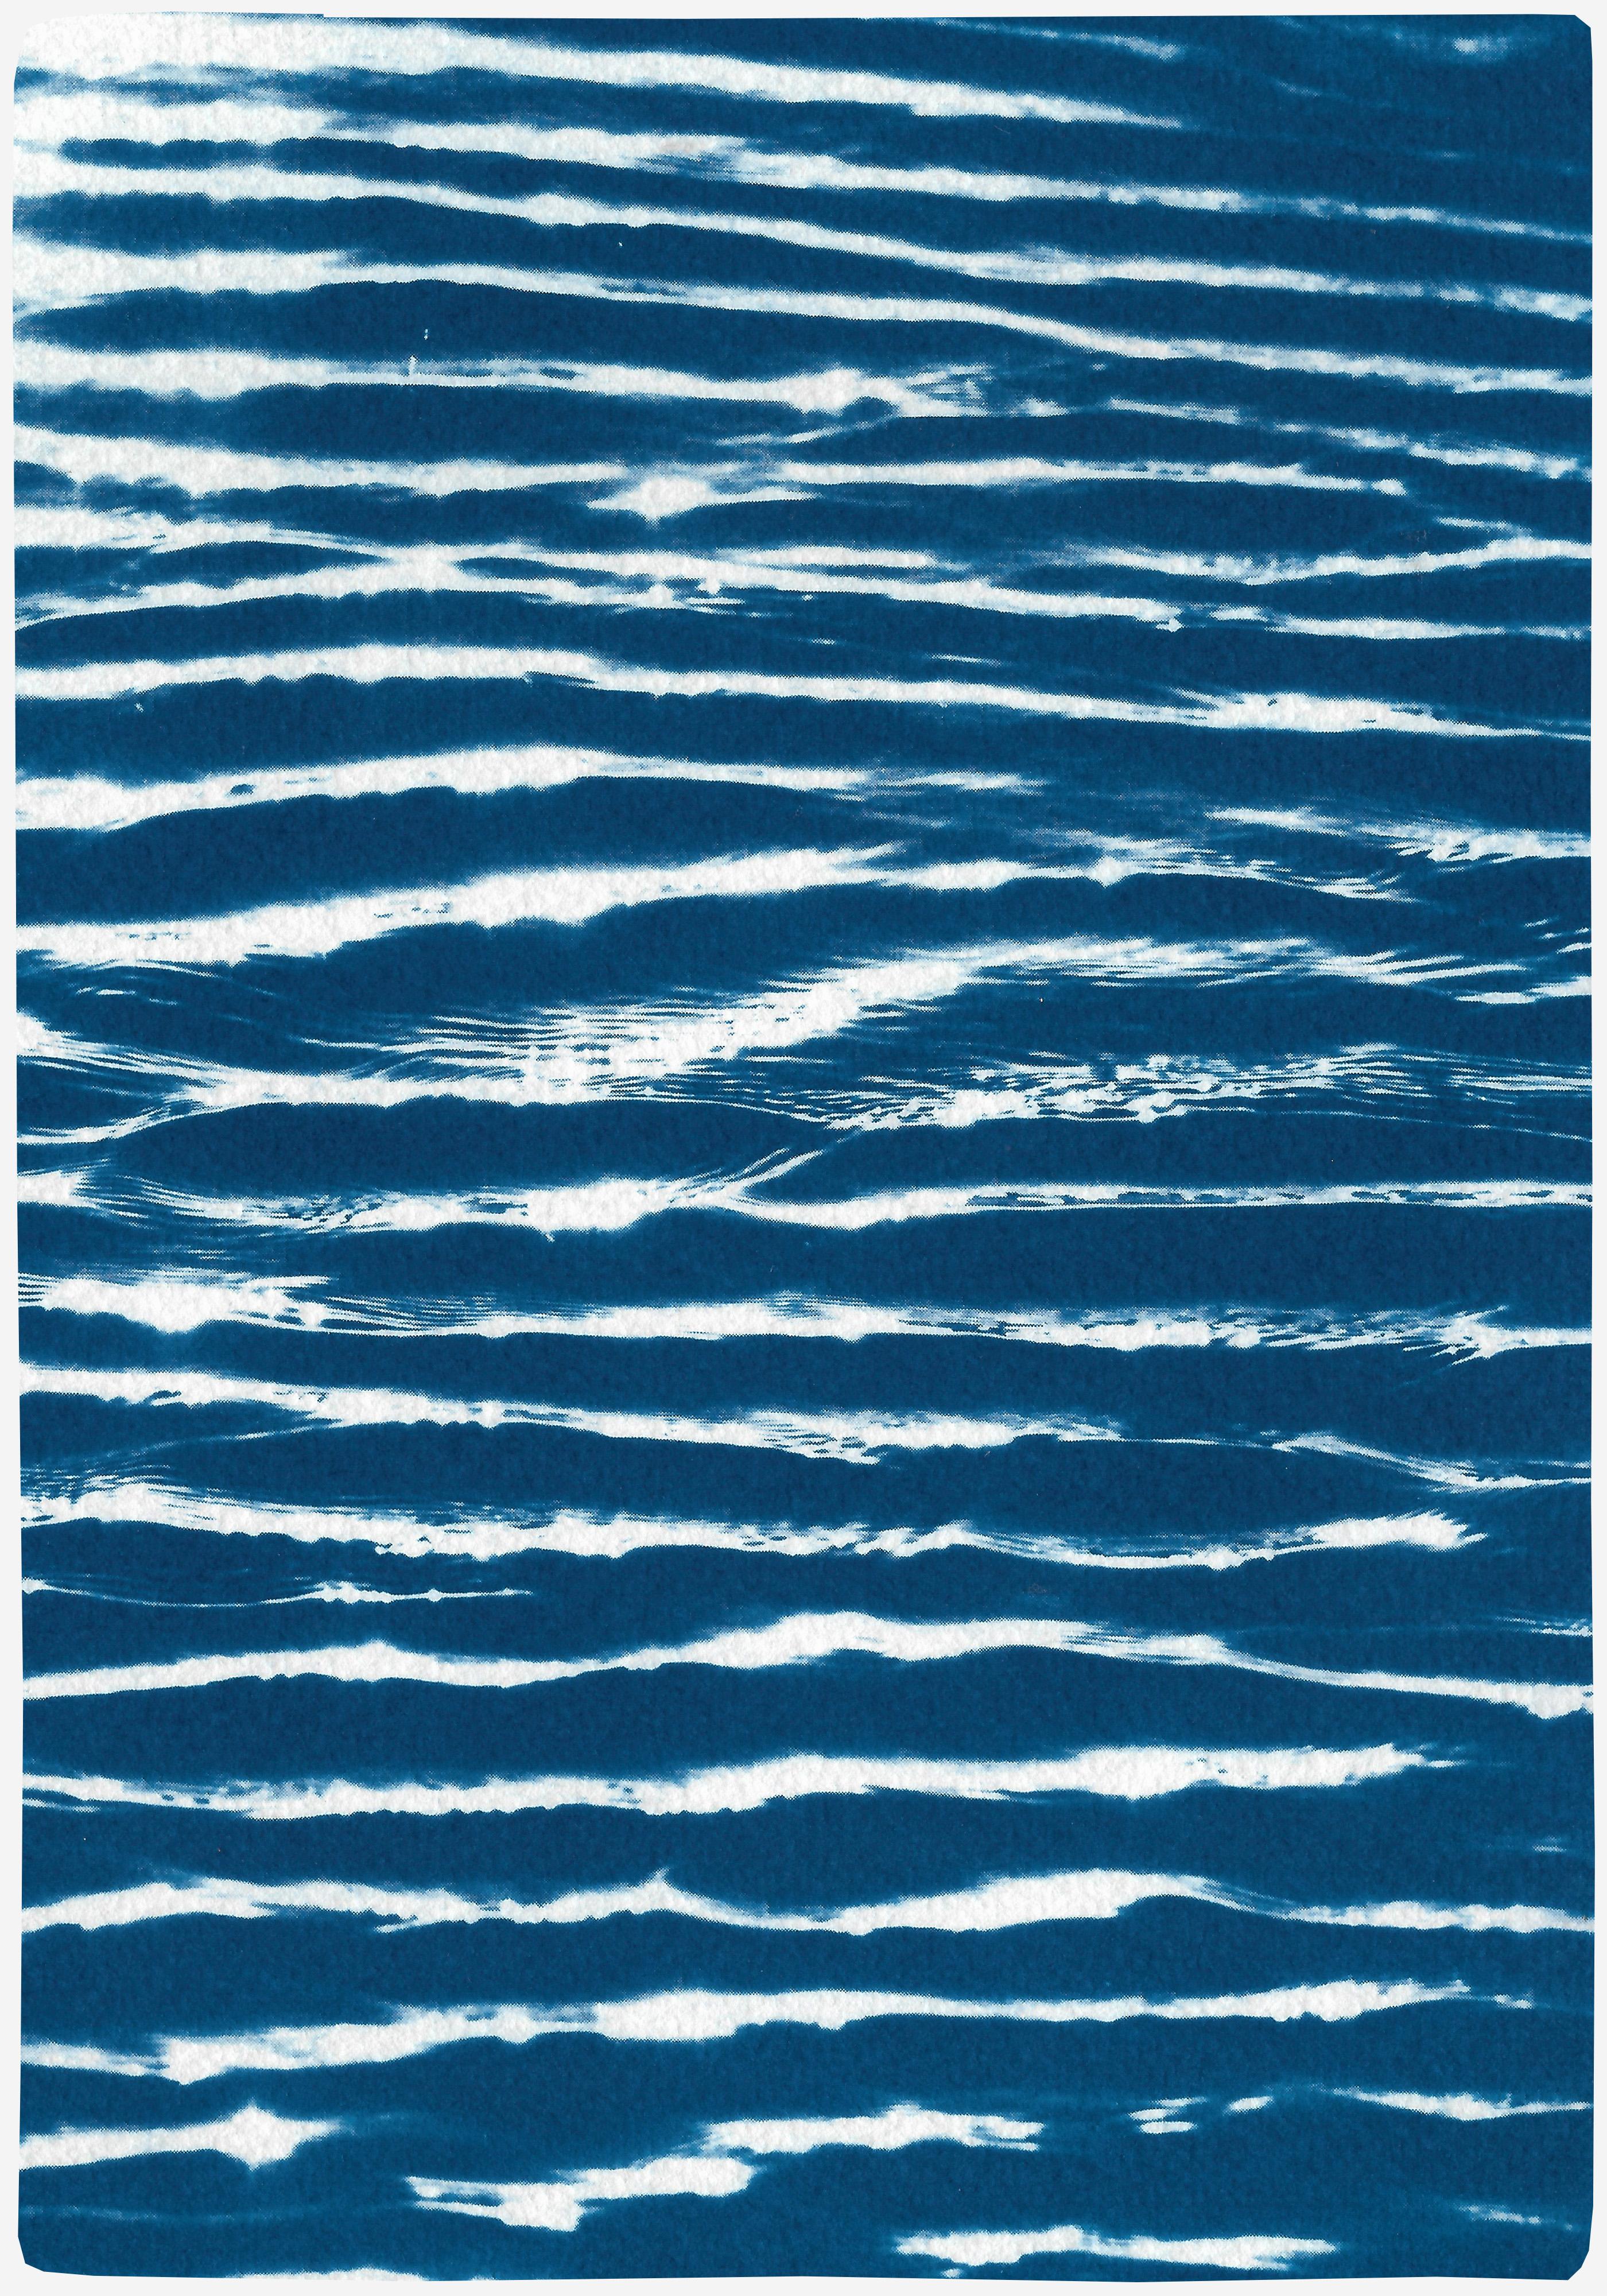 Dies ist eine exklusive handgedruckte Cyanotypie in limitierter Auflage.

Dieses wunderschöne Diptychon trägt den Titel 